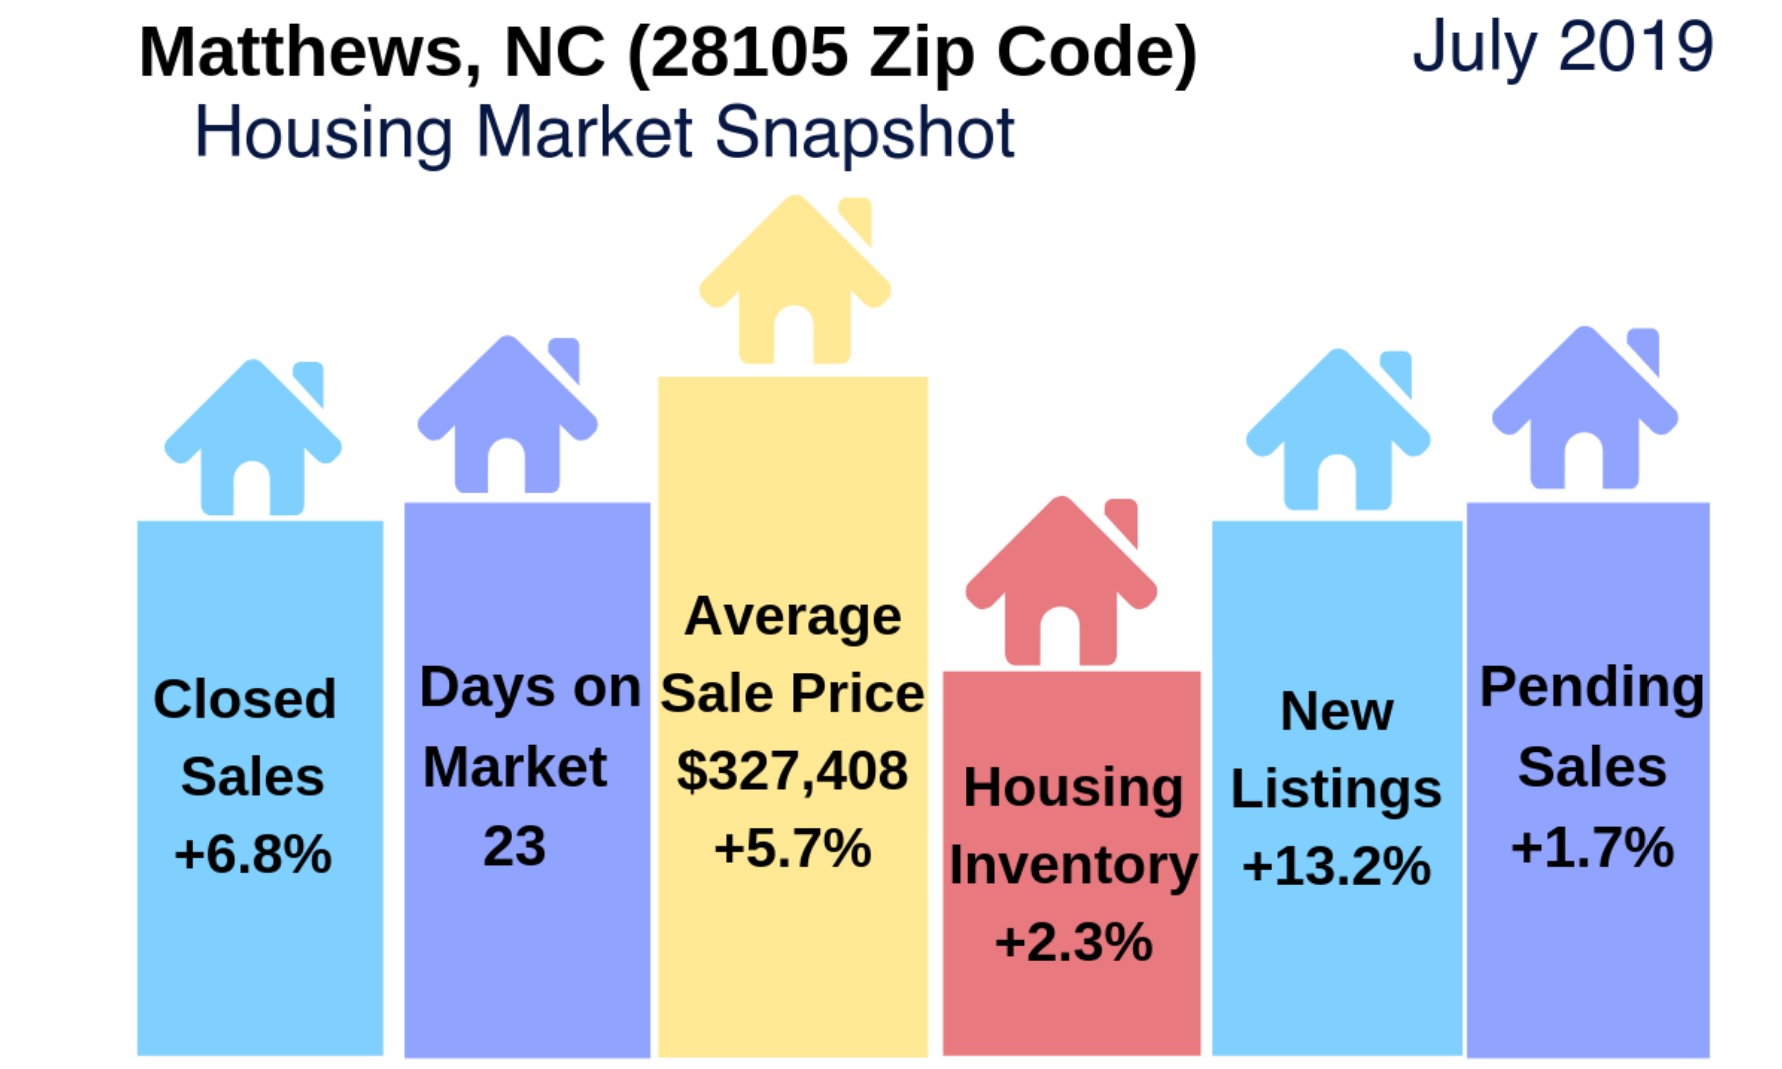 Matthews (28105 Zip Code) Real Estate Report: July 2019